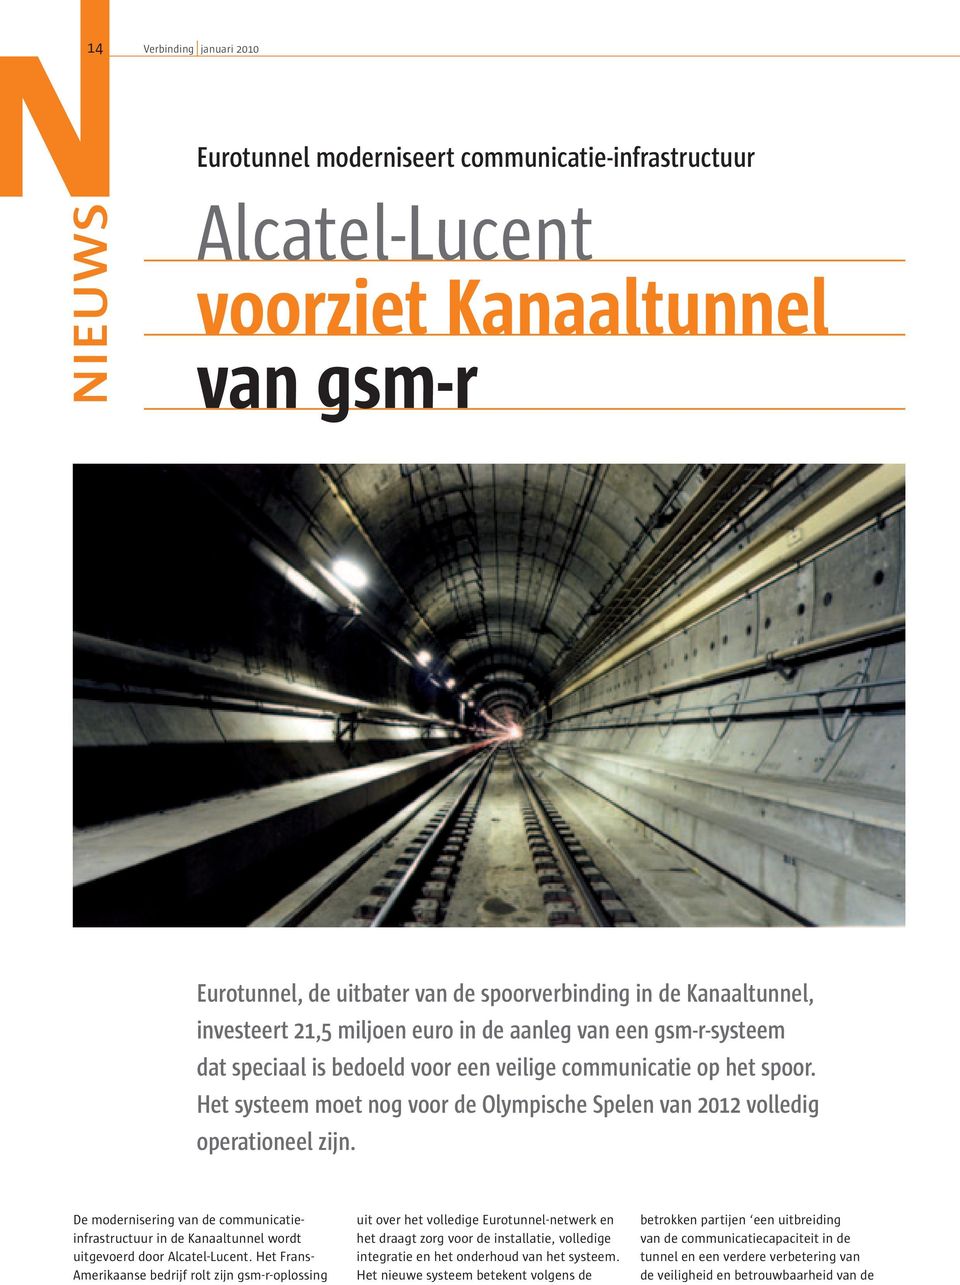 Het systeem moet nog voor de Olympische Spelen van 2012 volledig operationeel zijn. De modernisering van de communicatieinfrastructuur in de Kanaaltunnel wordt uitgevoerd door Alcatel-Lucent.